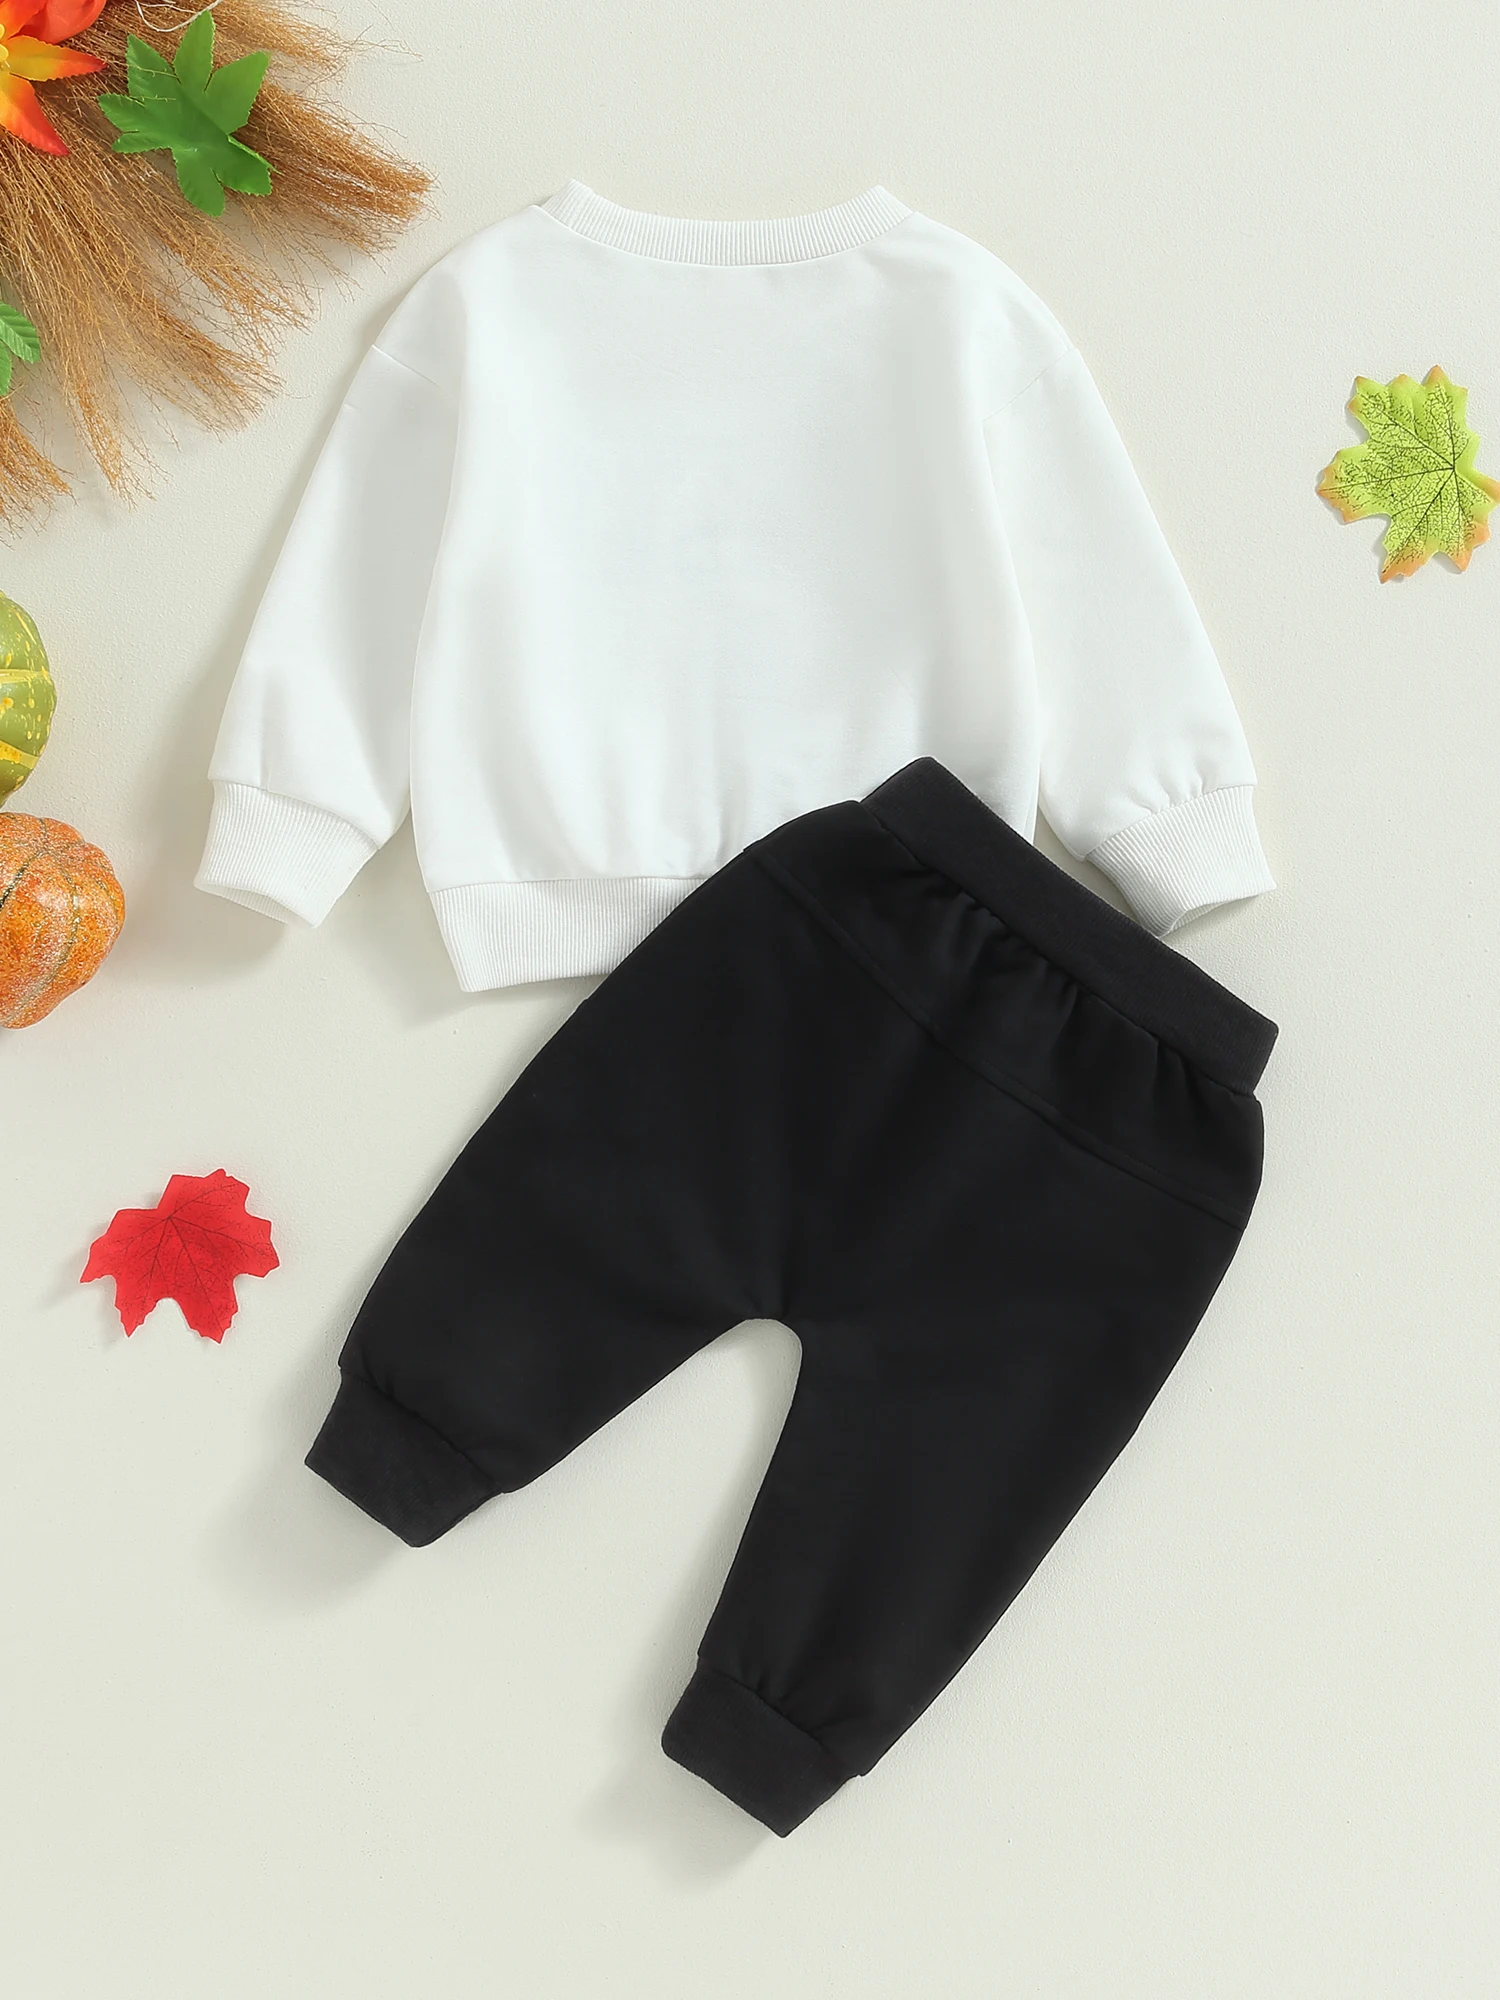 

Детский Семейный комплект, комбинезон с принтом тыквы, юбкой-пачкой и повязкой на голову, очаровательный осенний наряд для младенцев